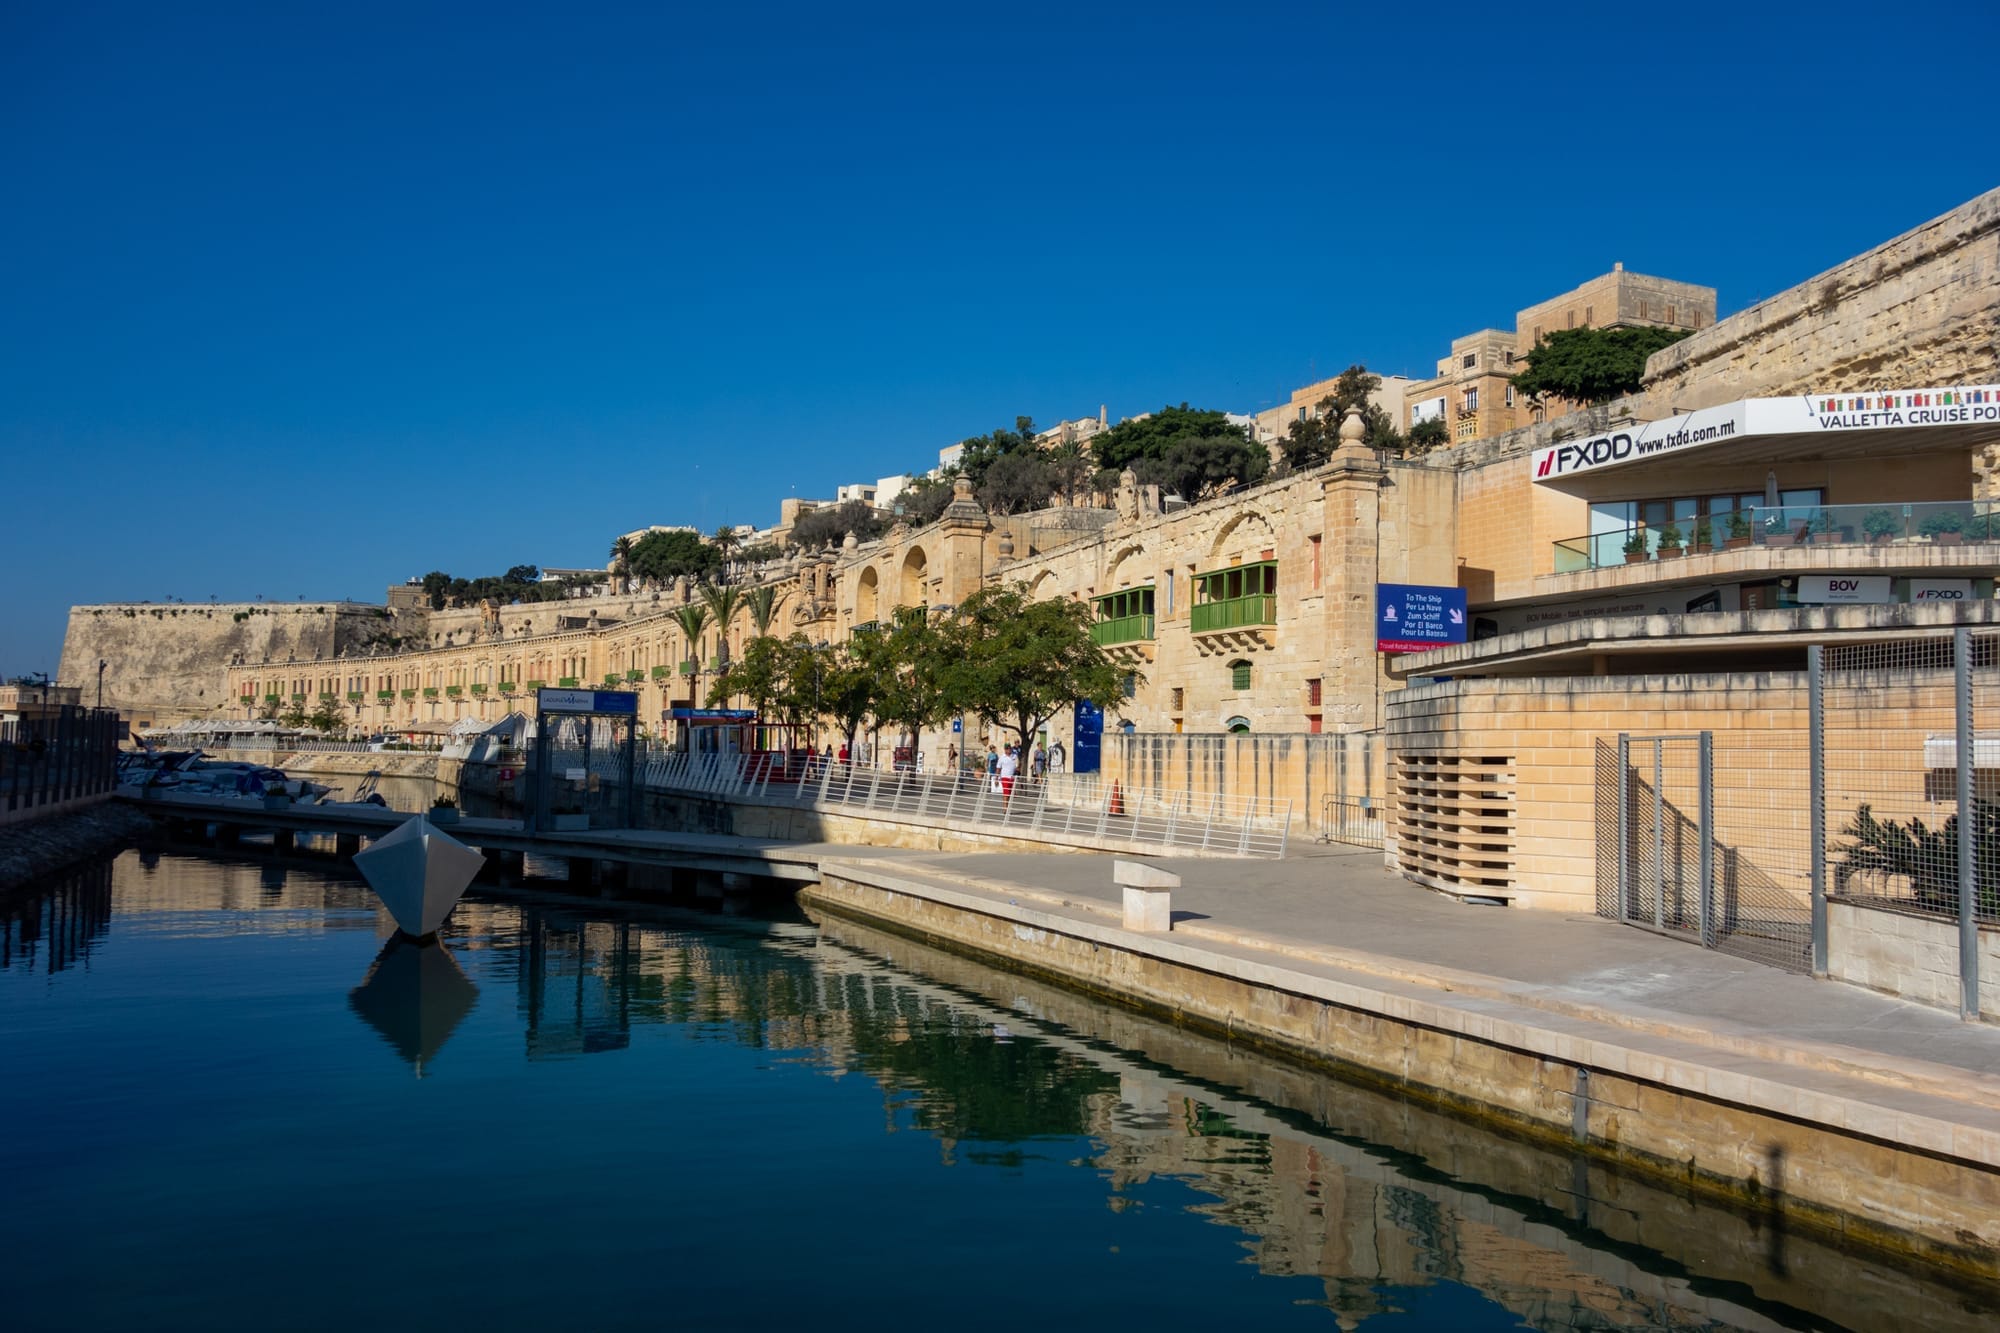 Das Cruise Terminal in Valetta, Malta, vom Weg zum Kreuzfahrtschiff aus gesehen.